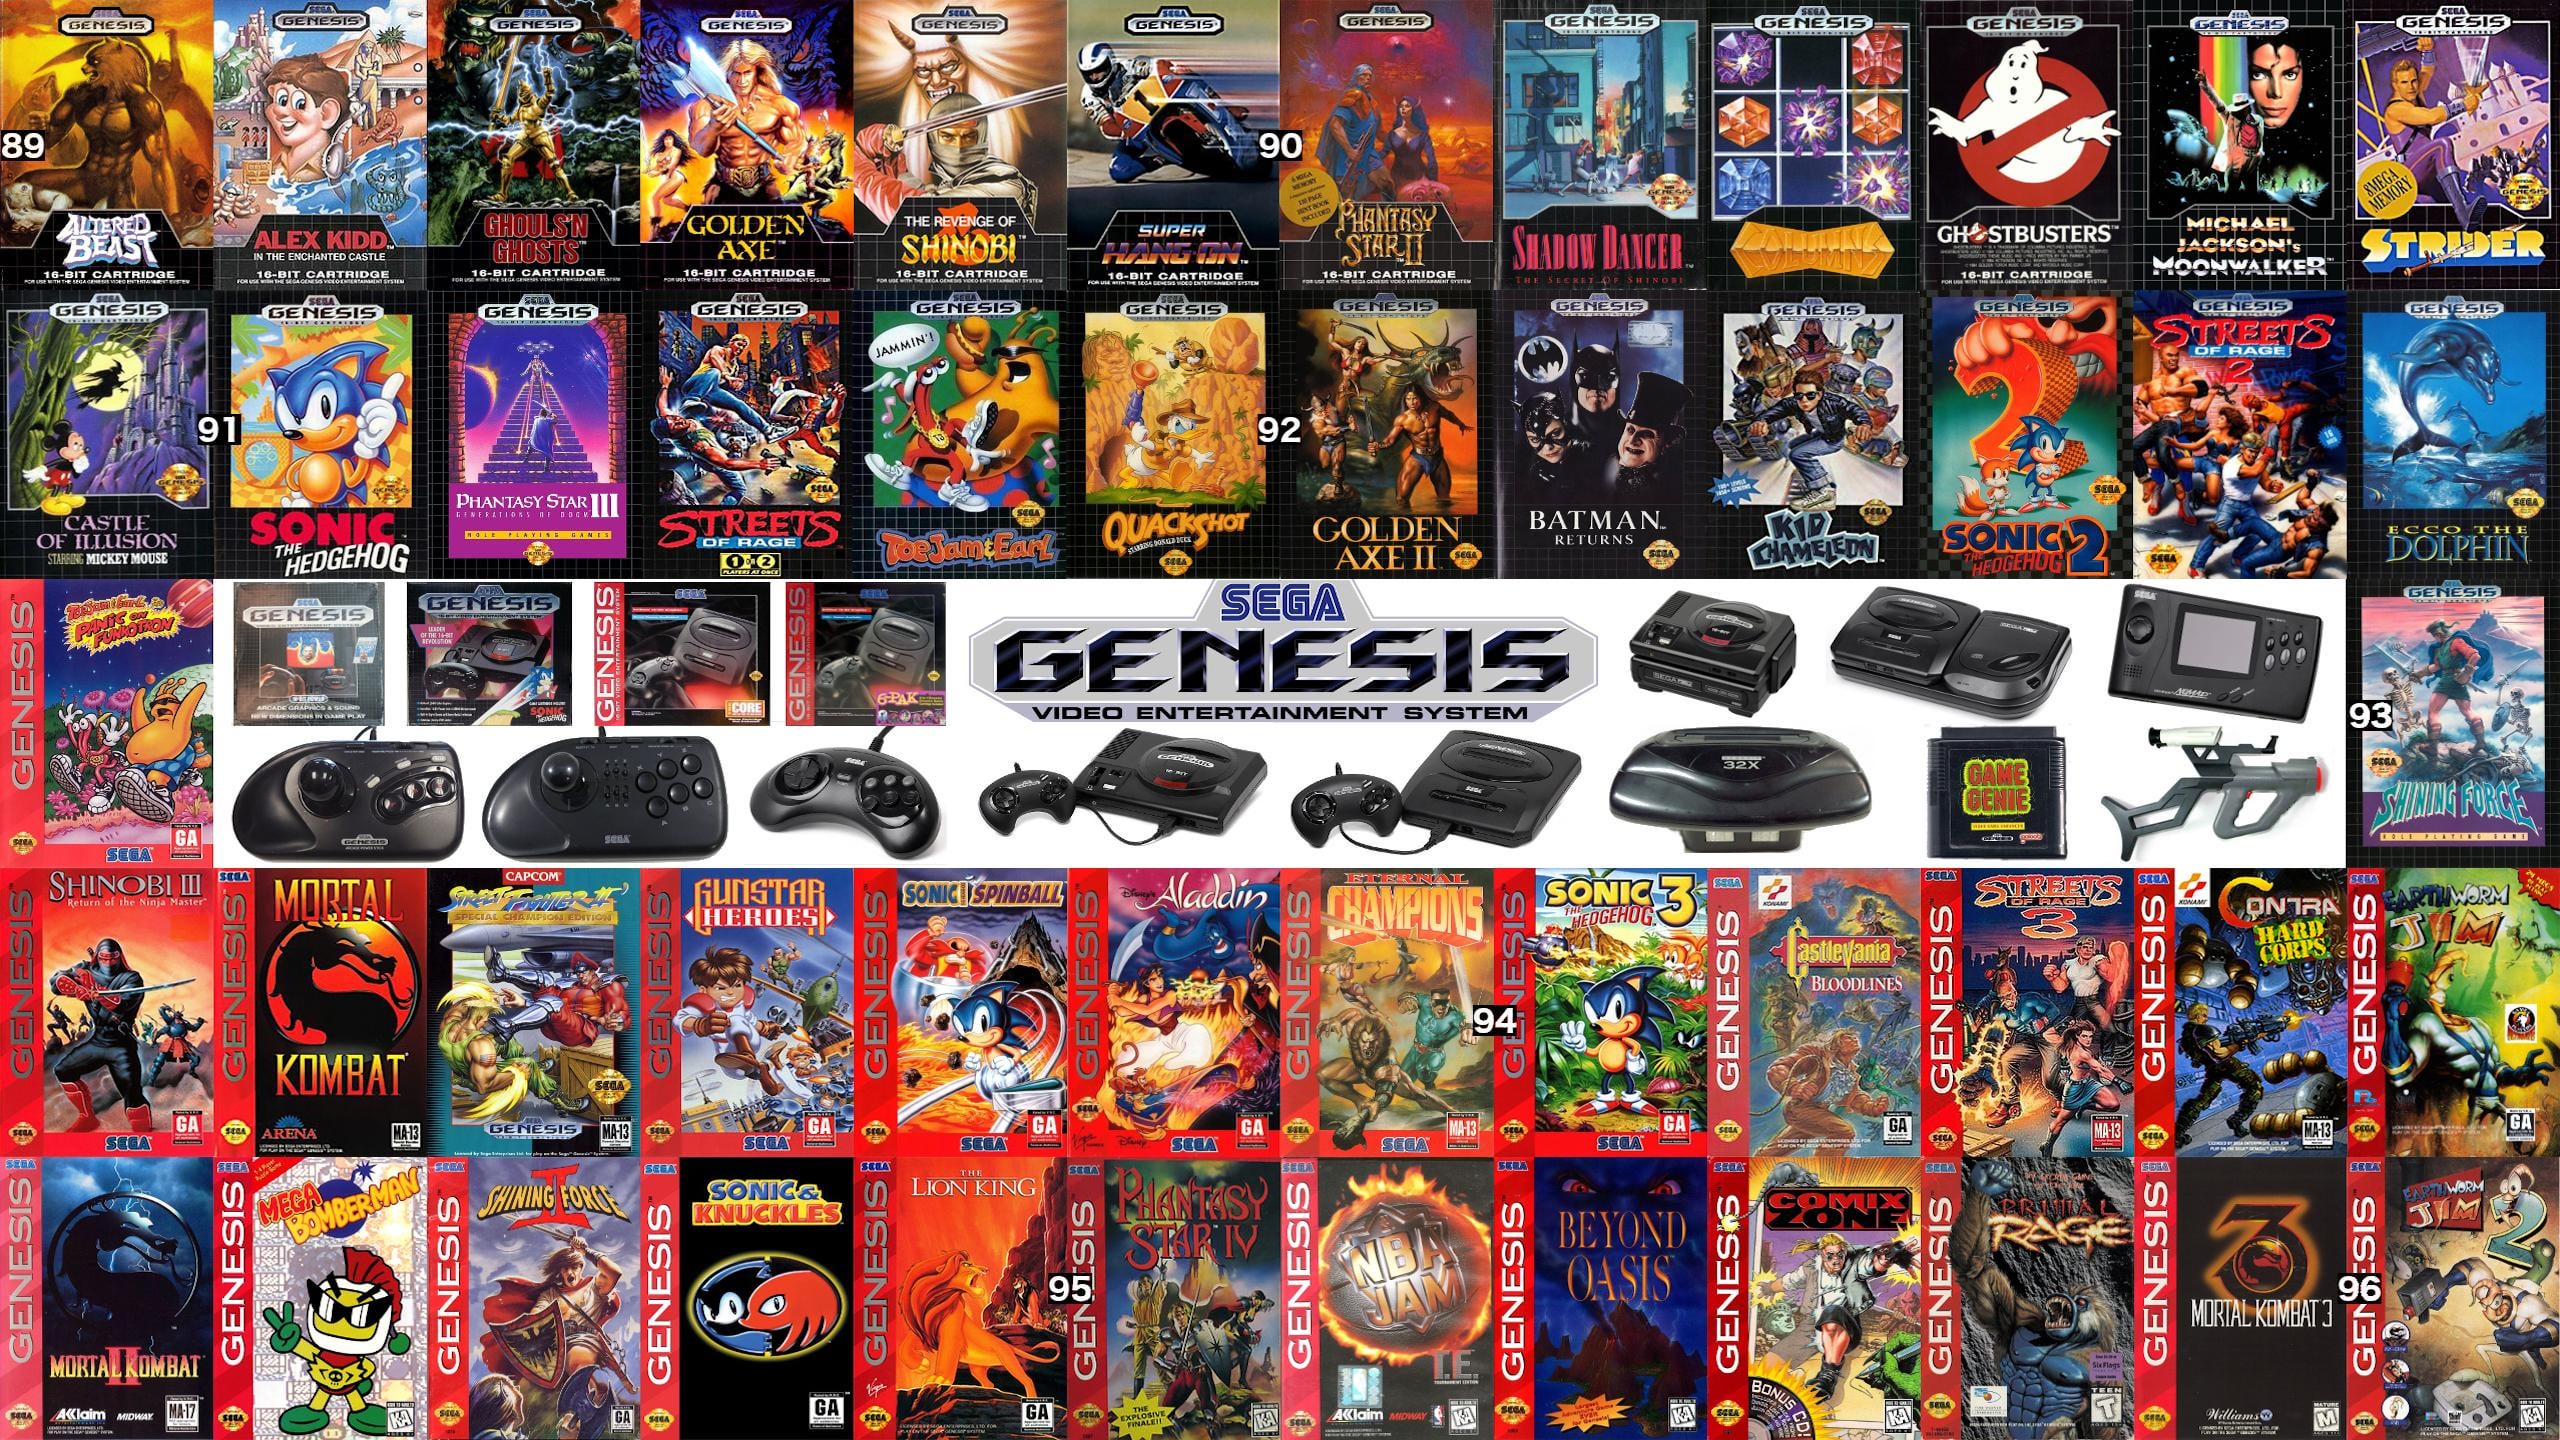 Original NES SNES Genesis N64 PS1